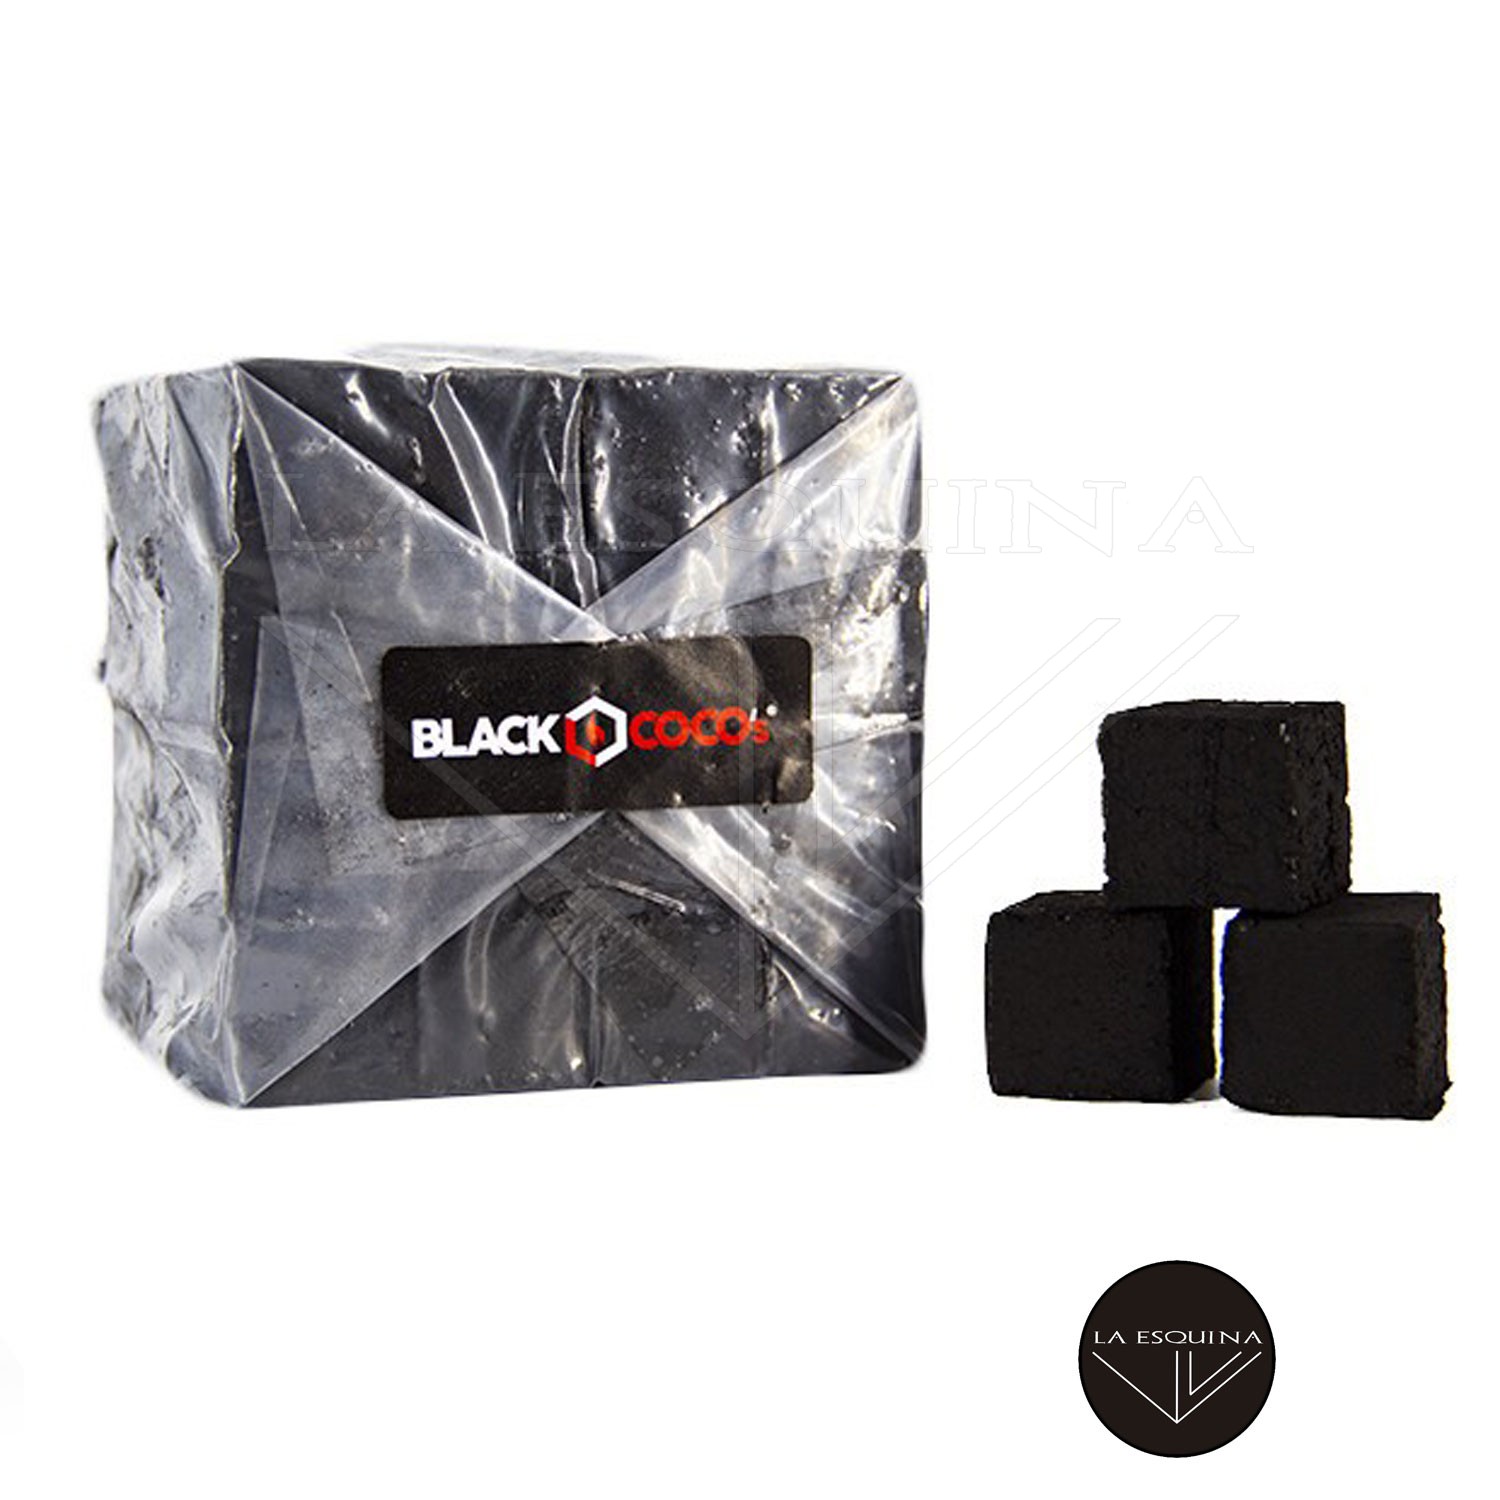 Carbones BLACKCOCO’S 1 kg